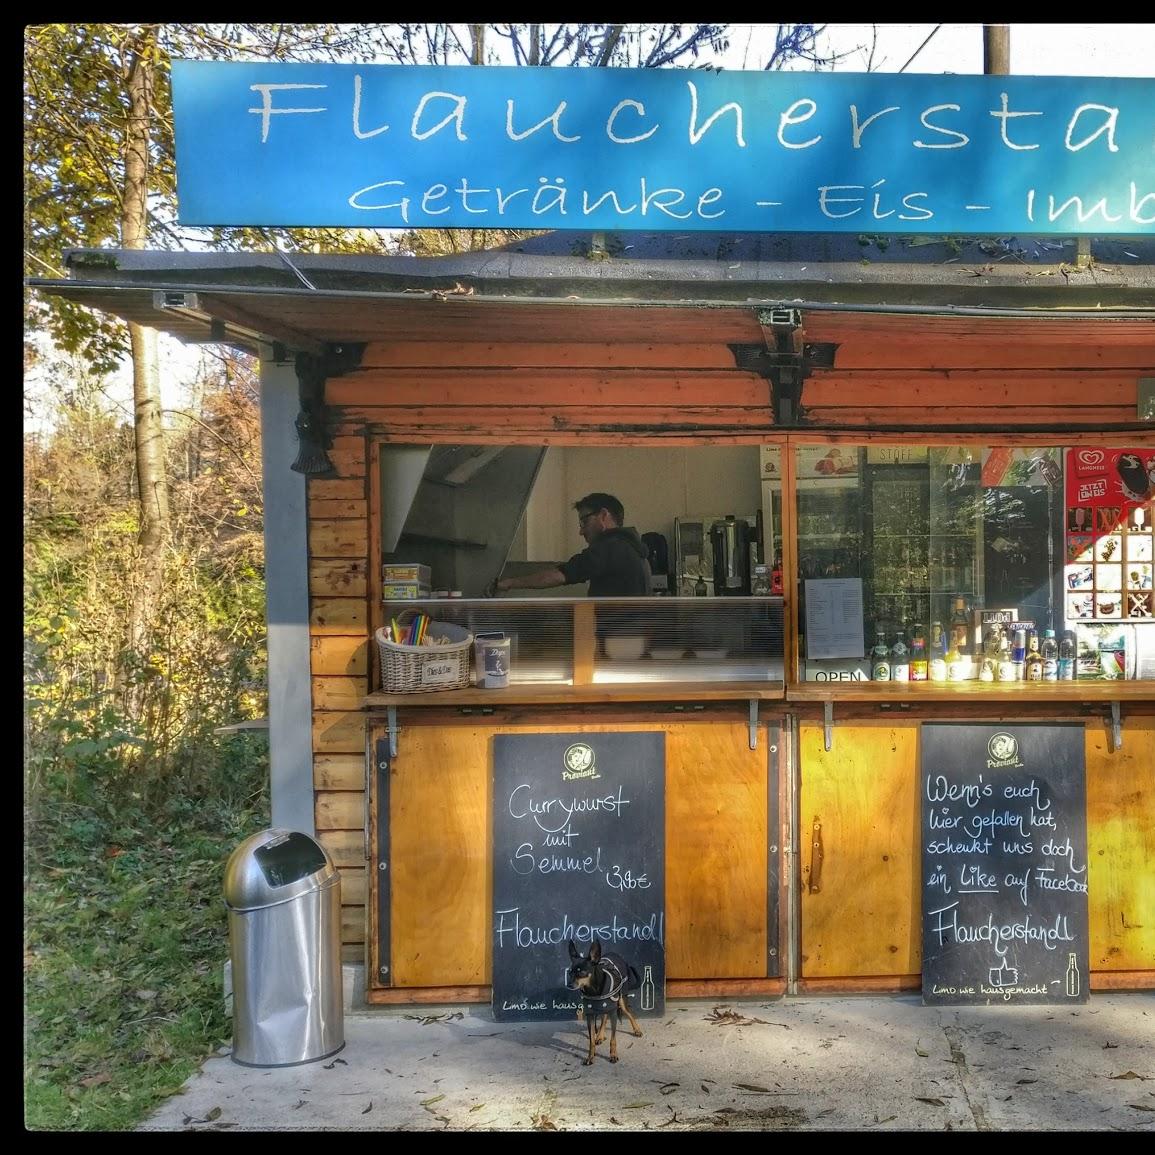 Restaurant "Flaucherstandl Kiosk" in München